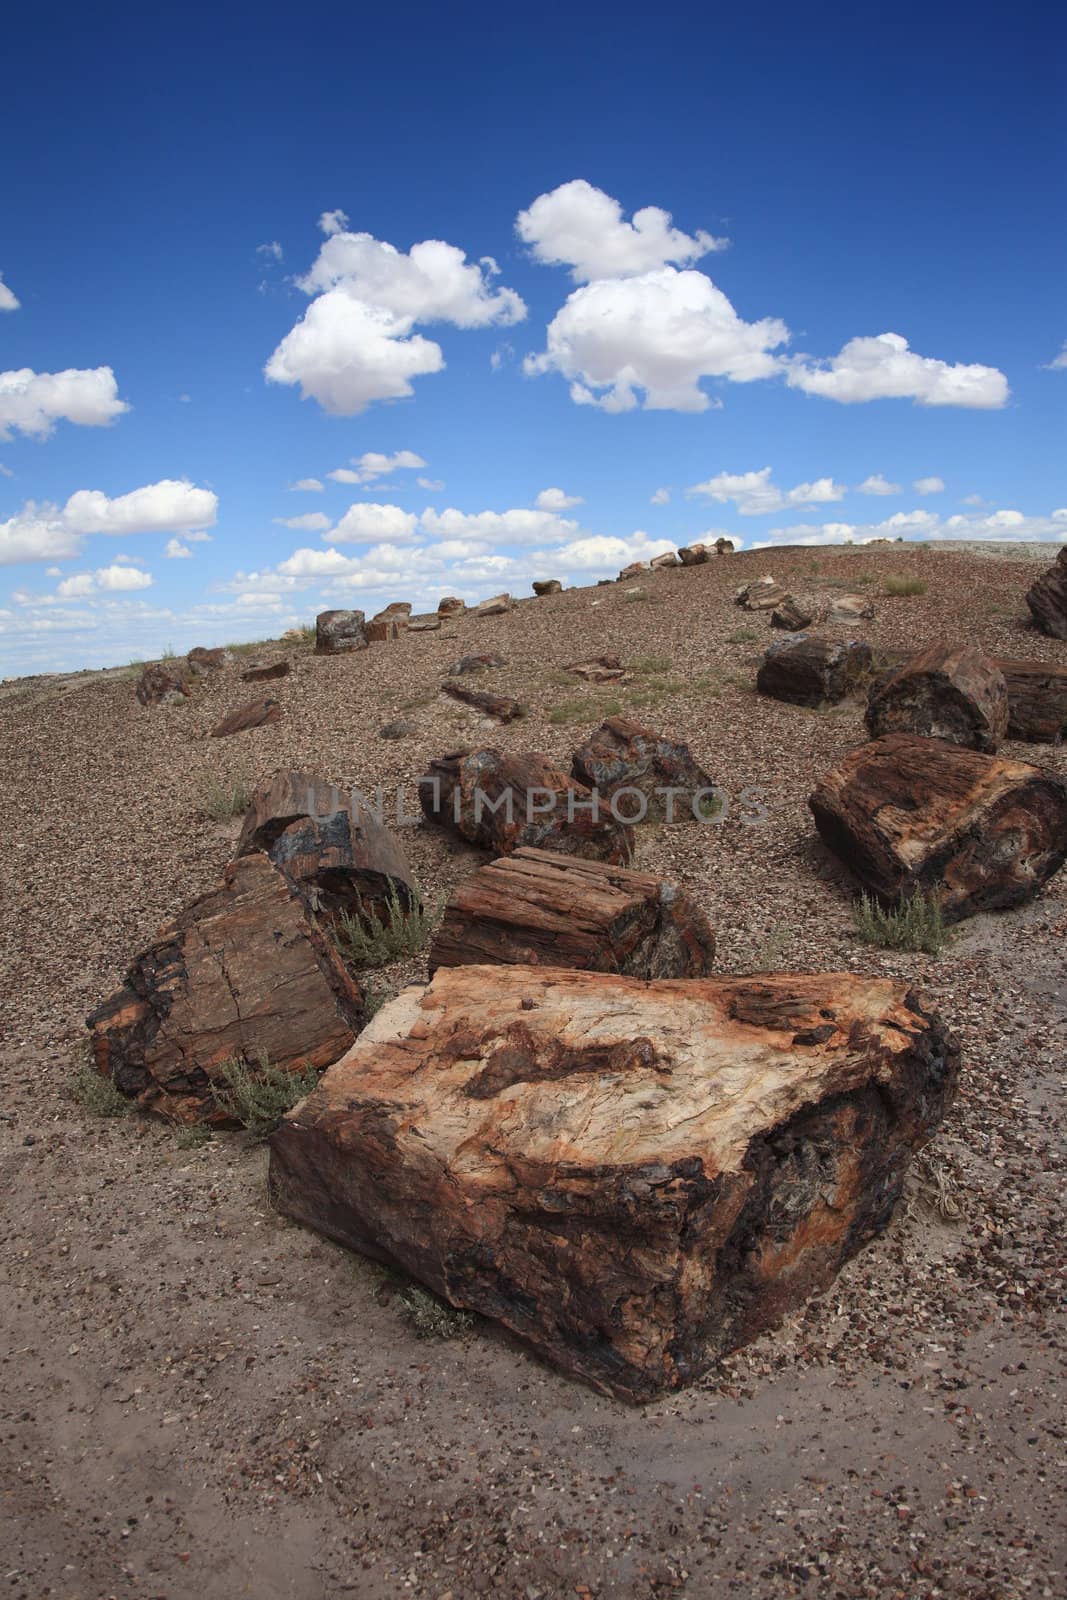 Petrified trees in Arizona National Park.